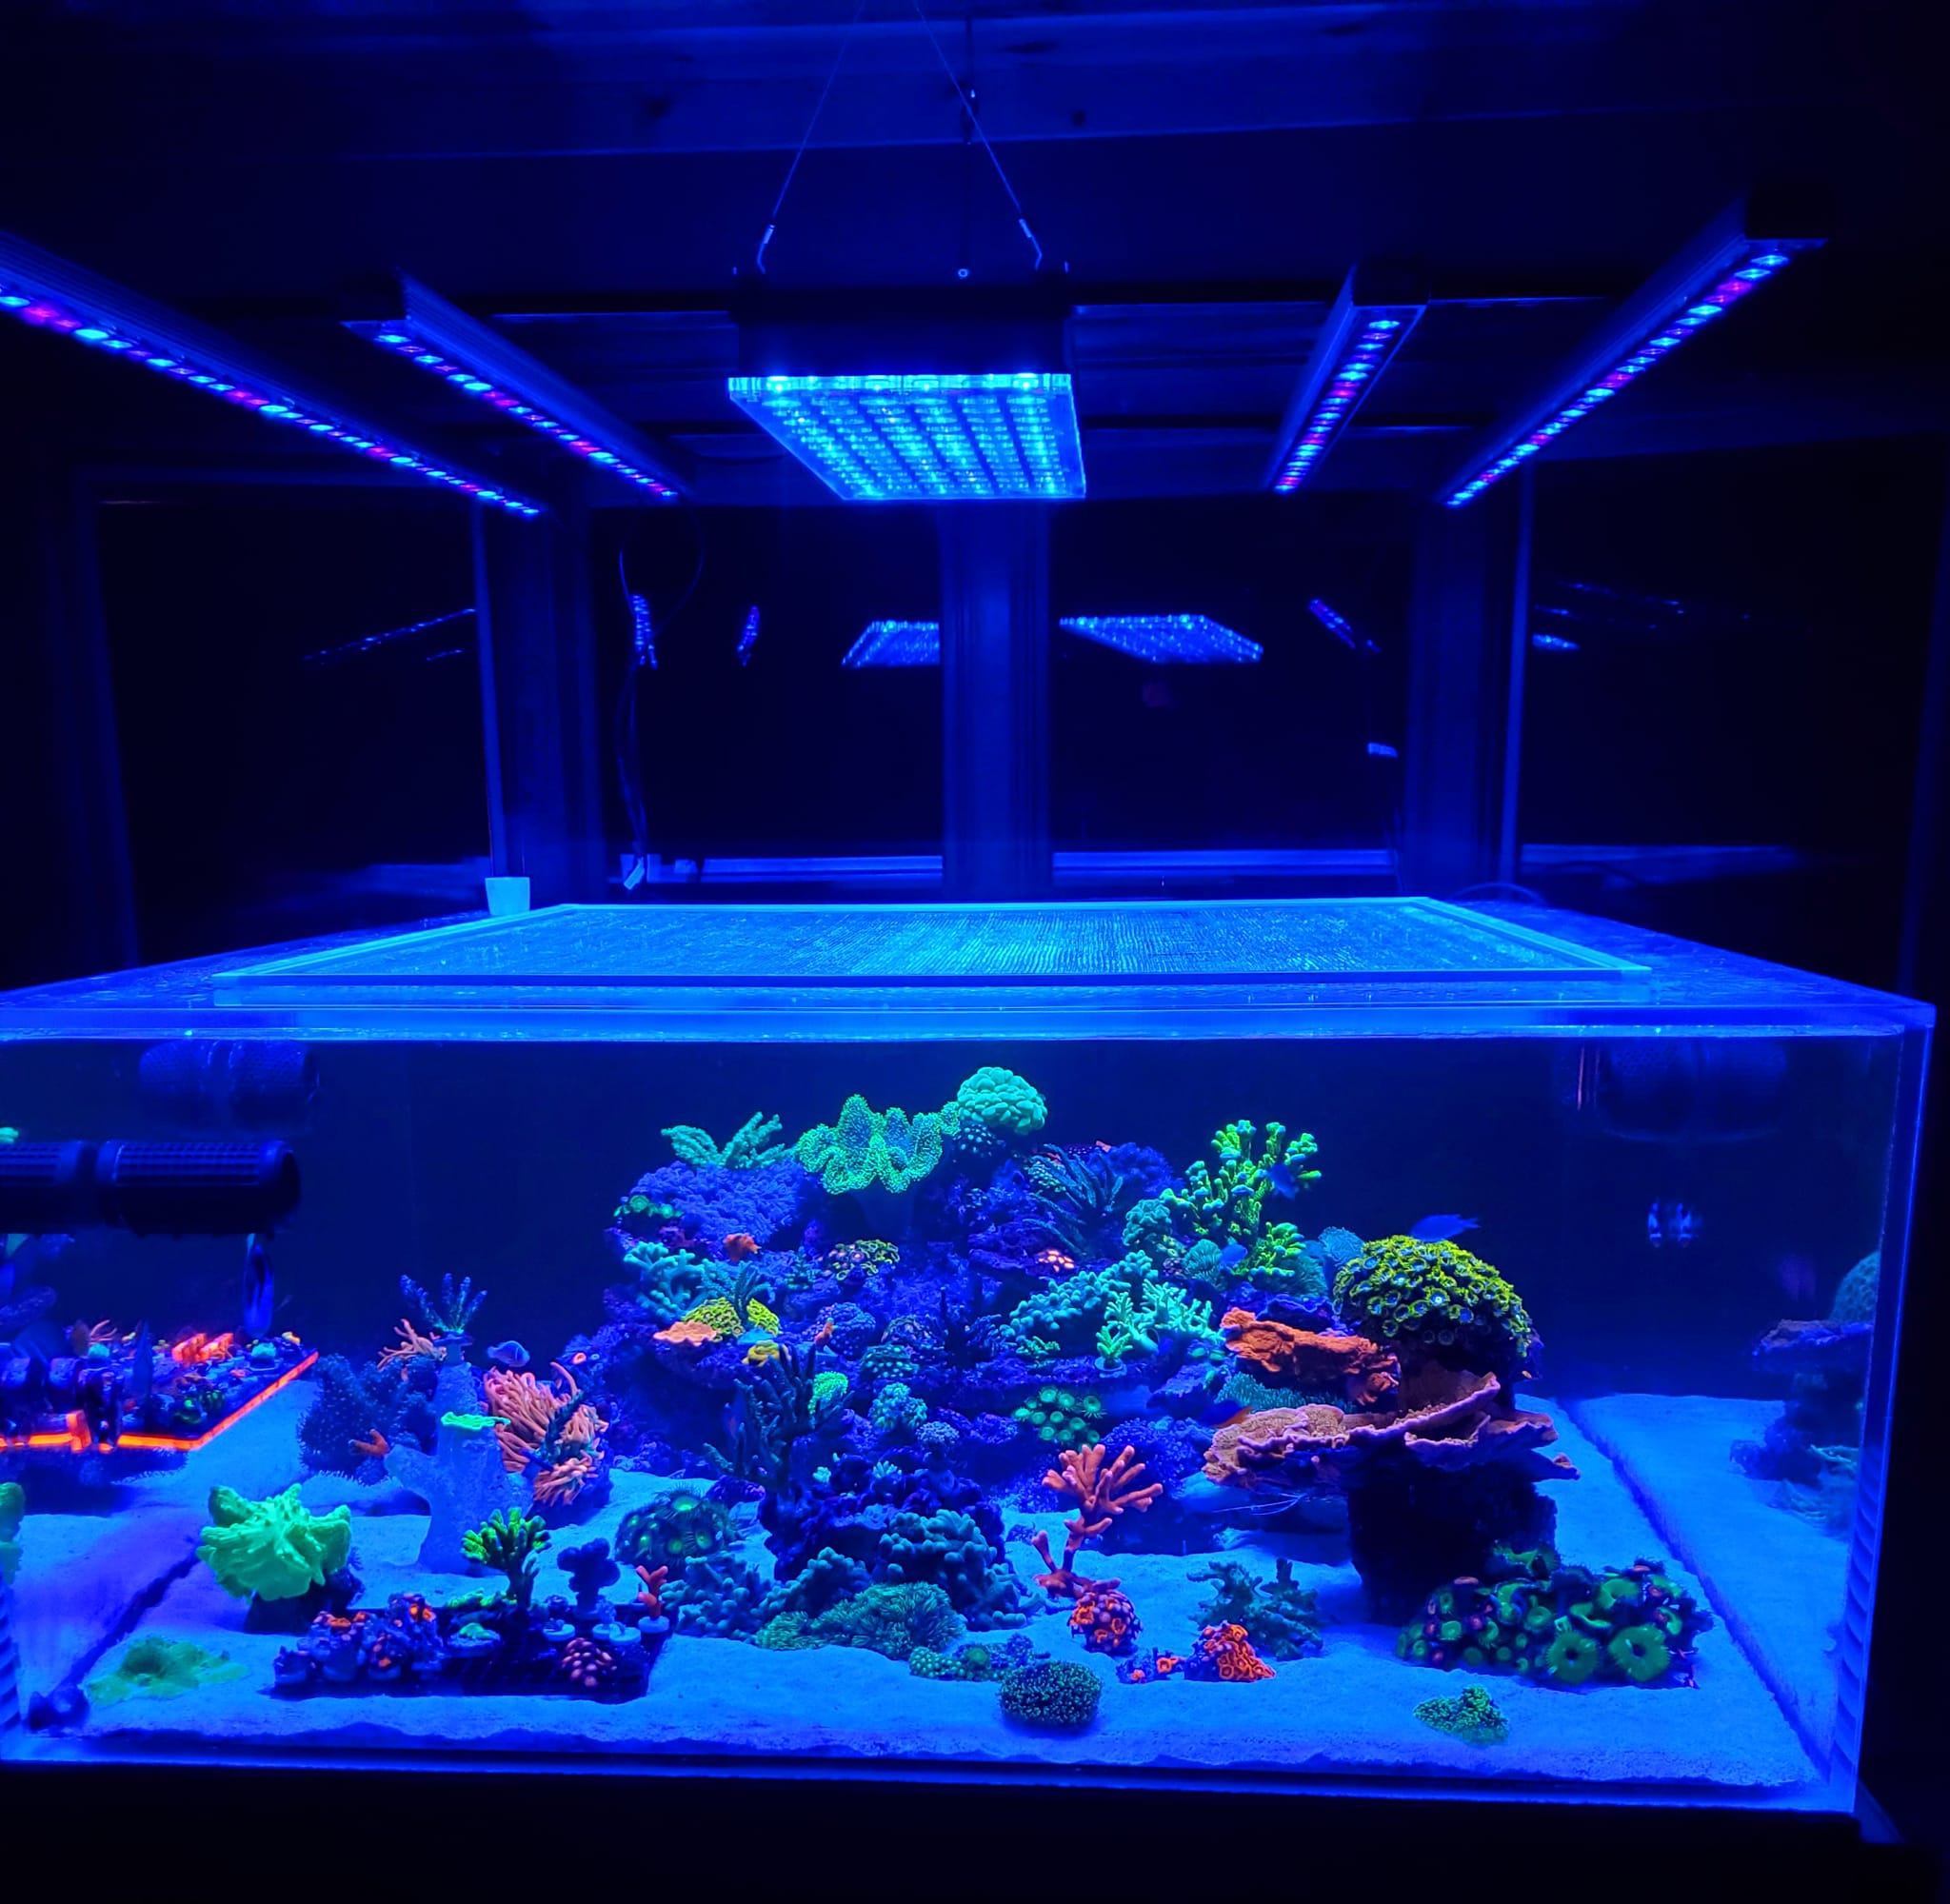 珊瑚礁水族馆 LED 照明 atlantik 图标和 OR3-LED 条